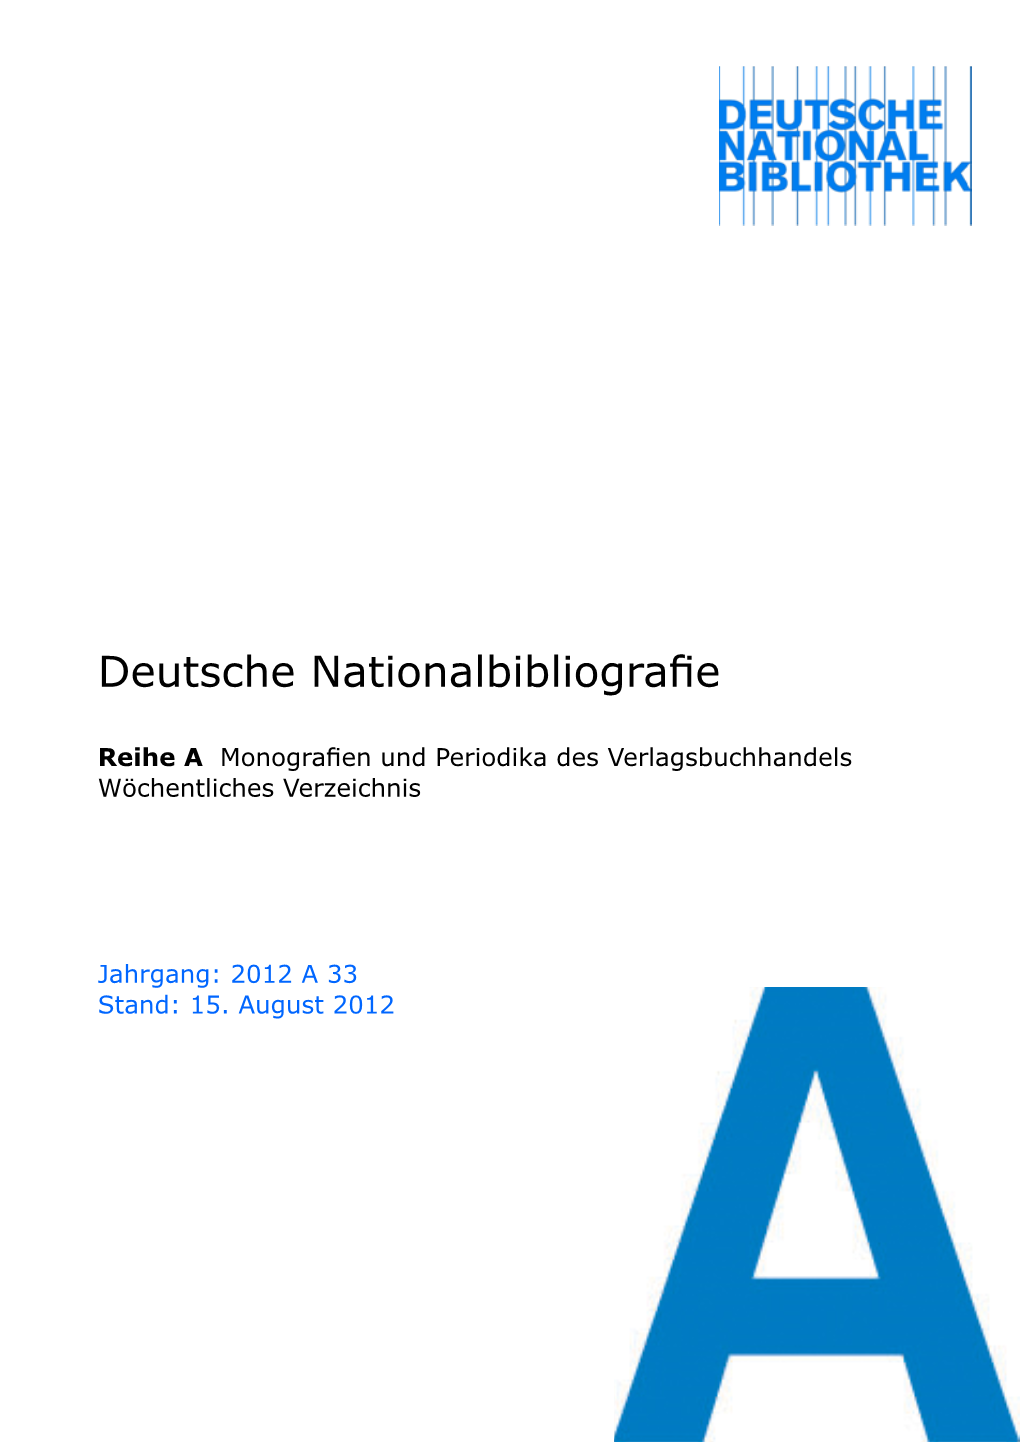 Deutsche Nationalbibliografie 2012 a 33